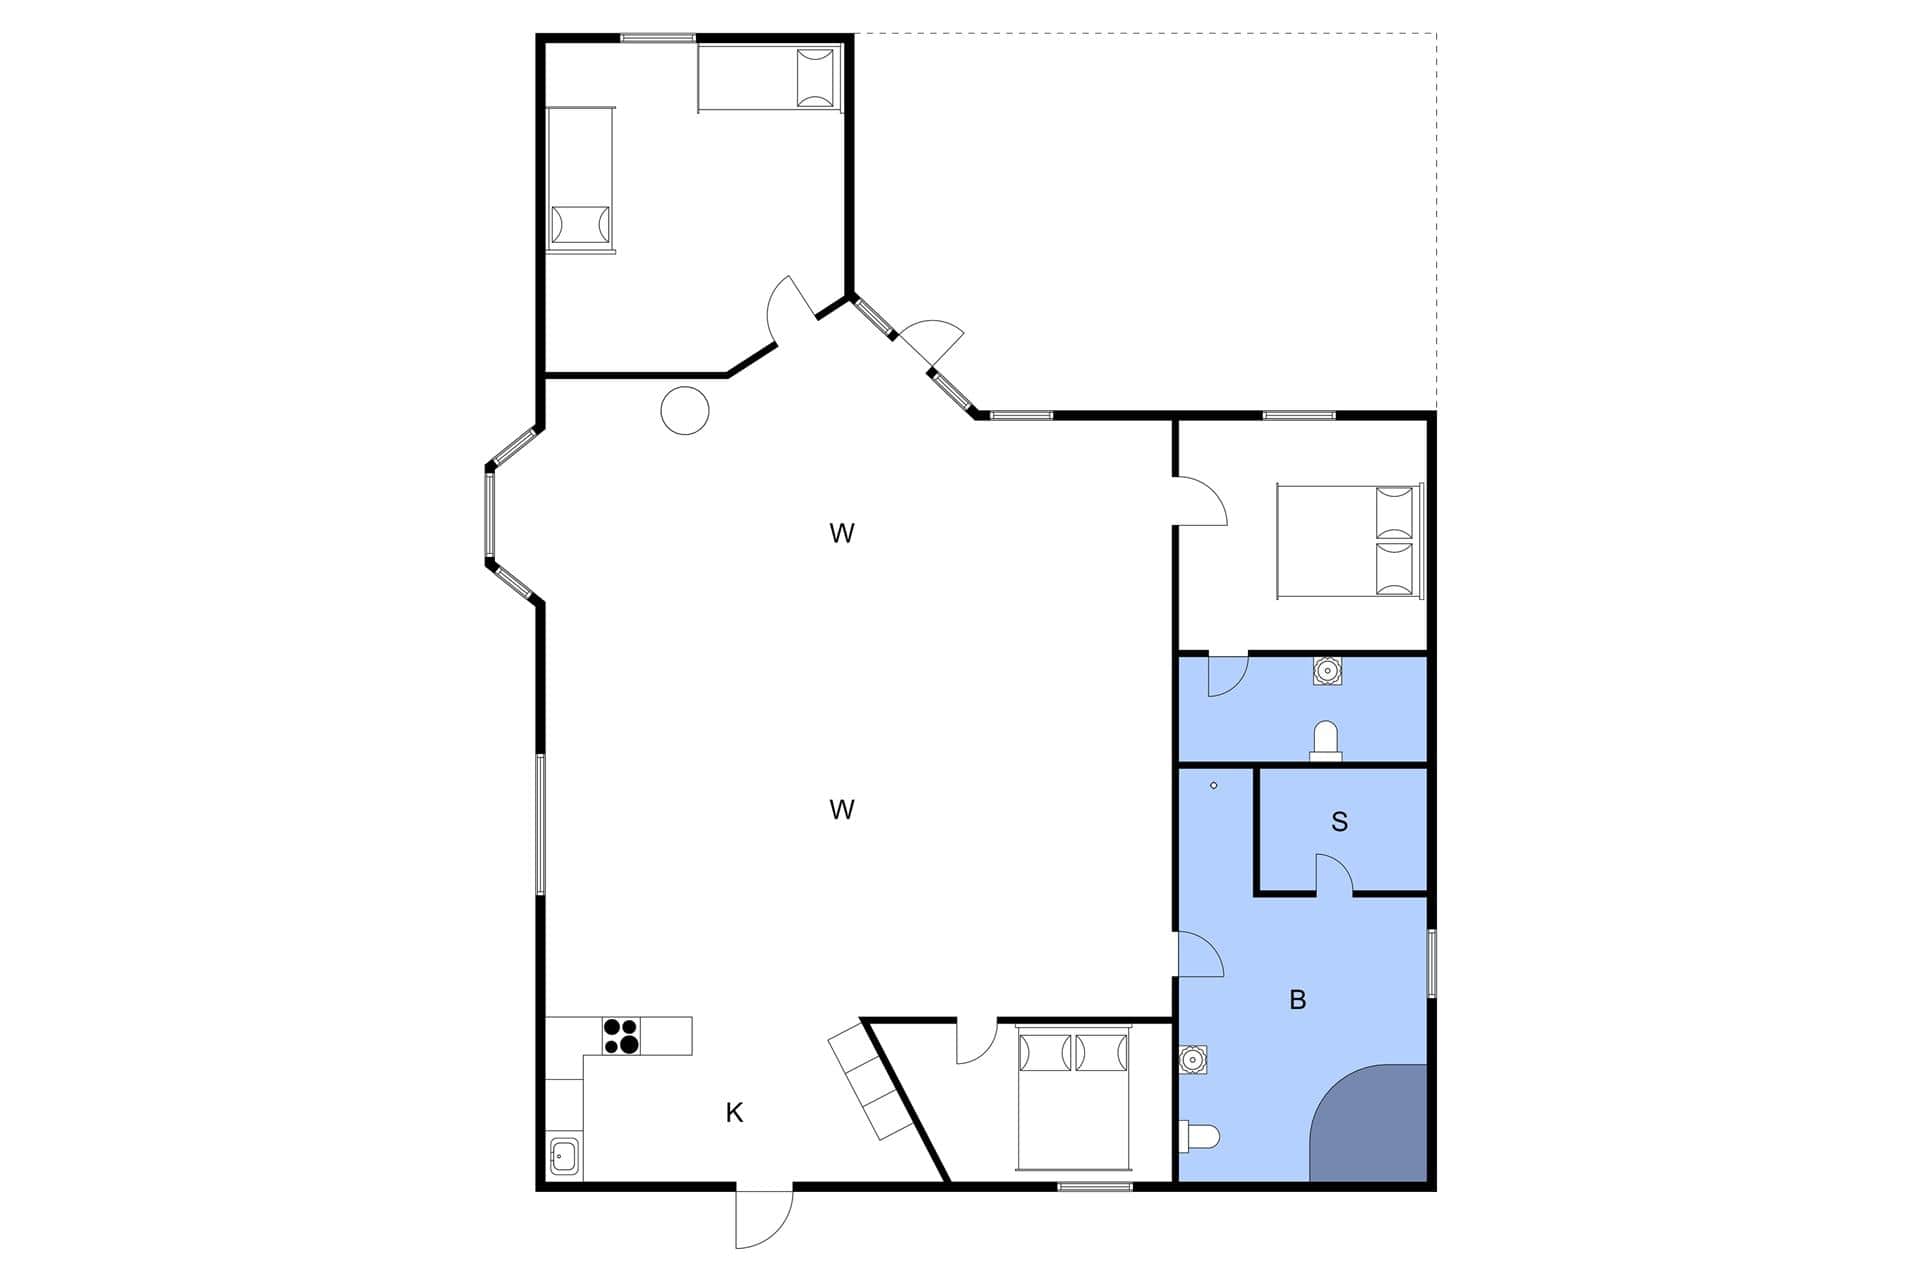 Interior 6-3 Holiday-home M64222, Siriusvej 18, DK - 5500 Middelfart